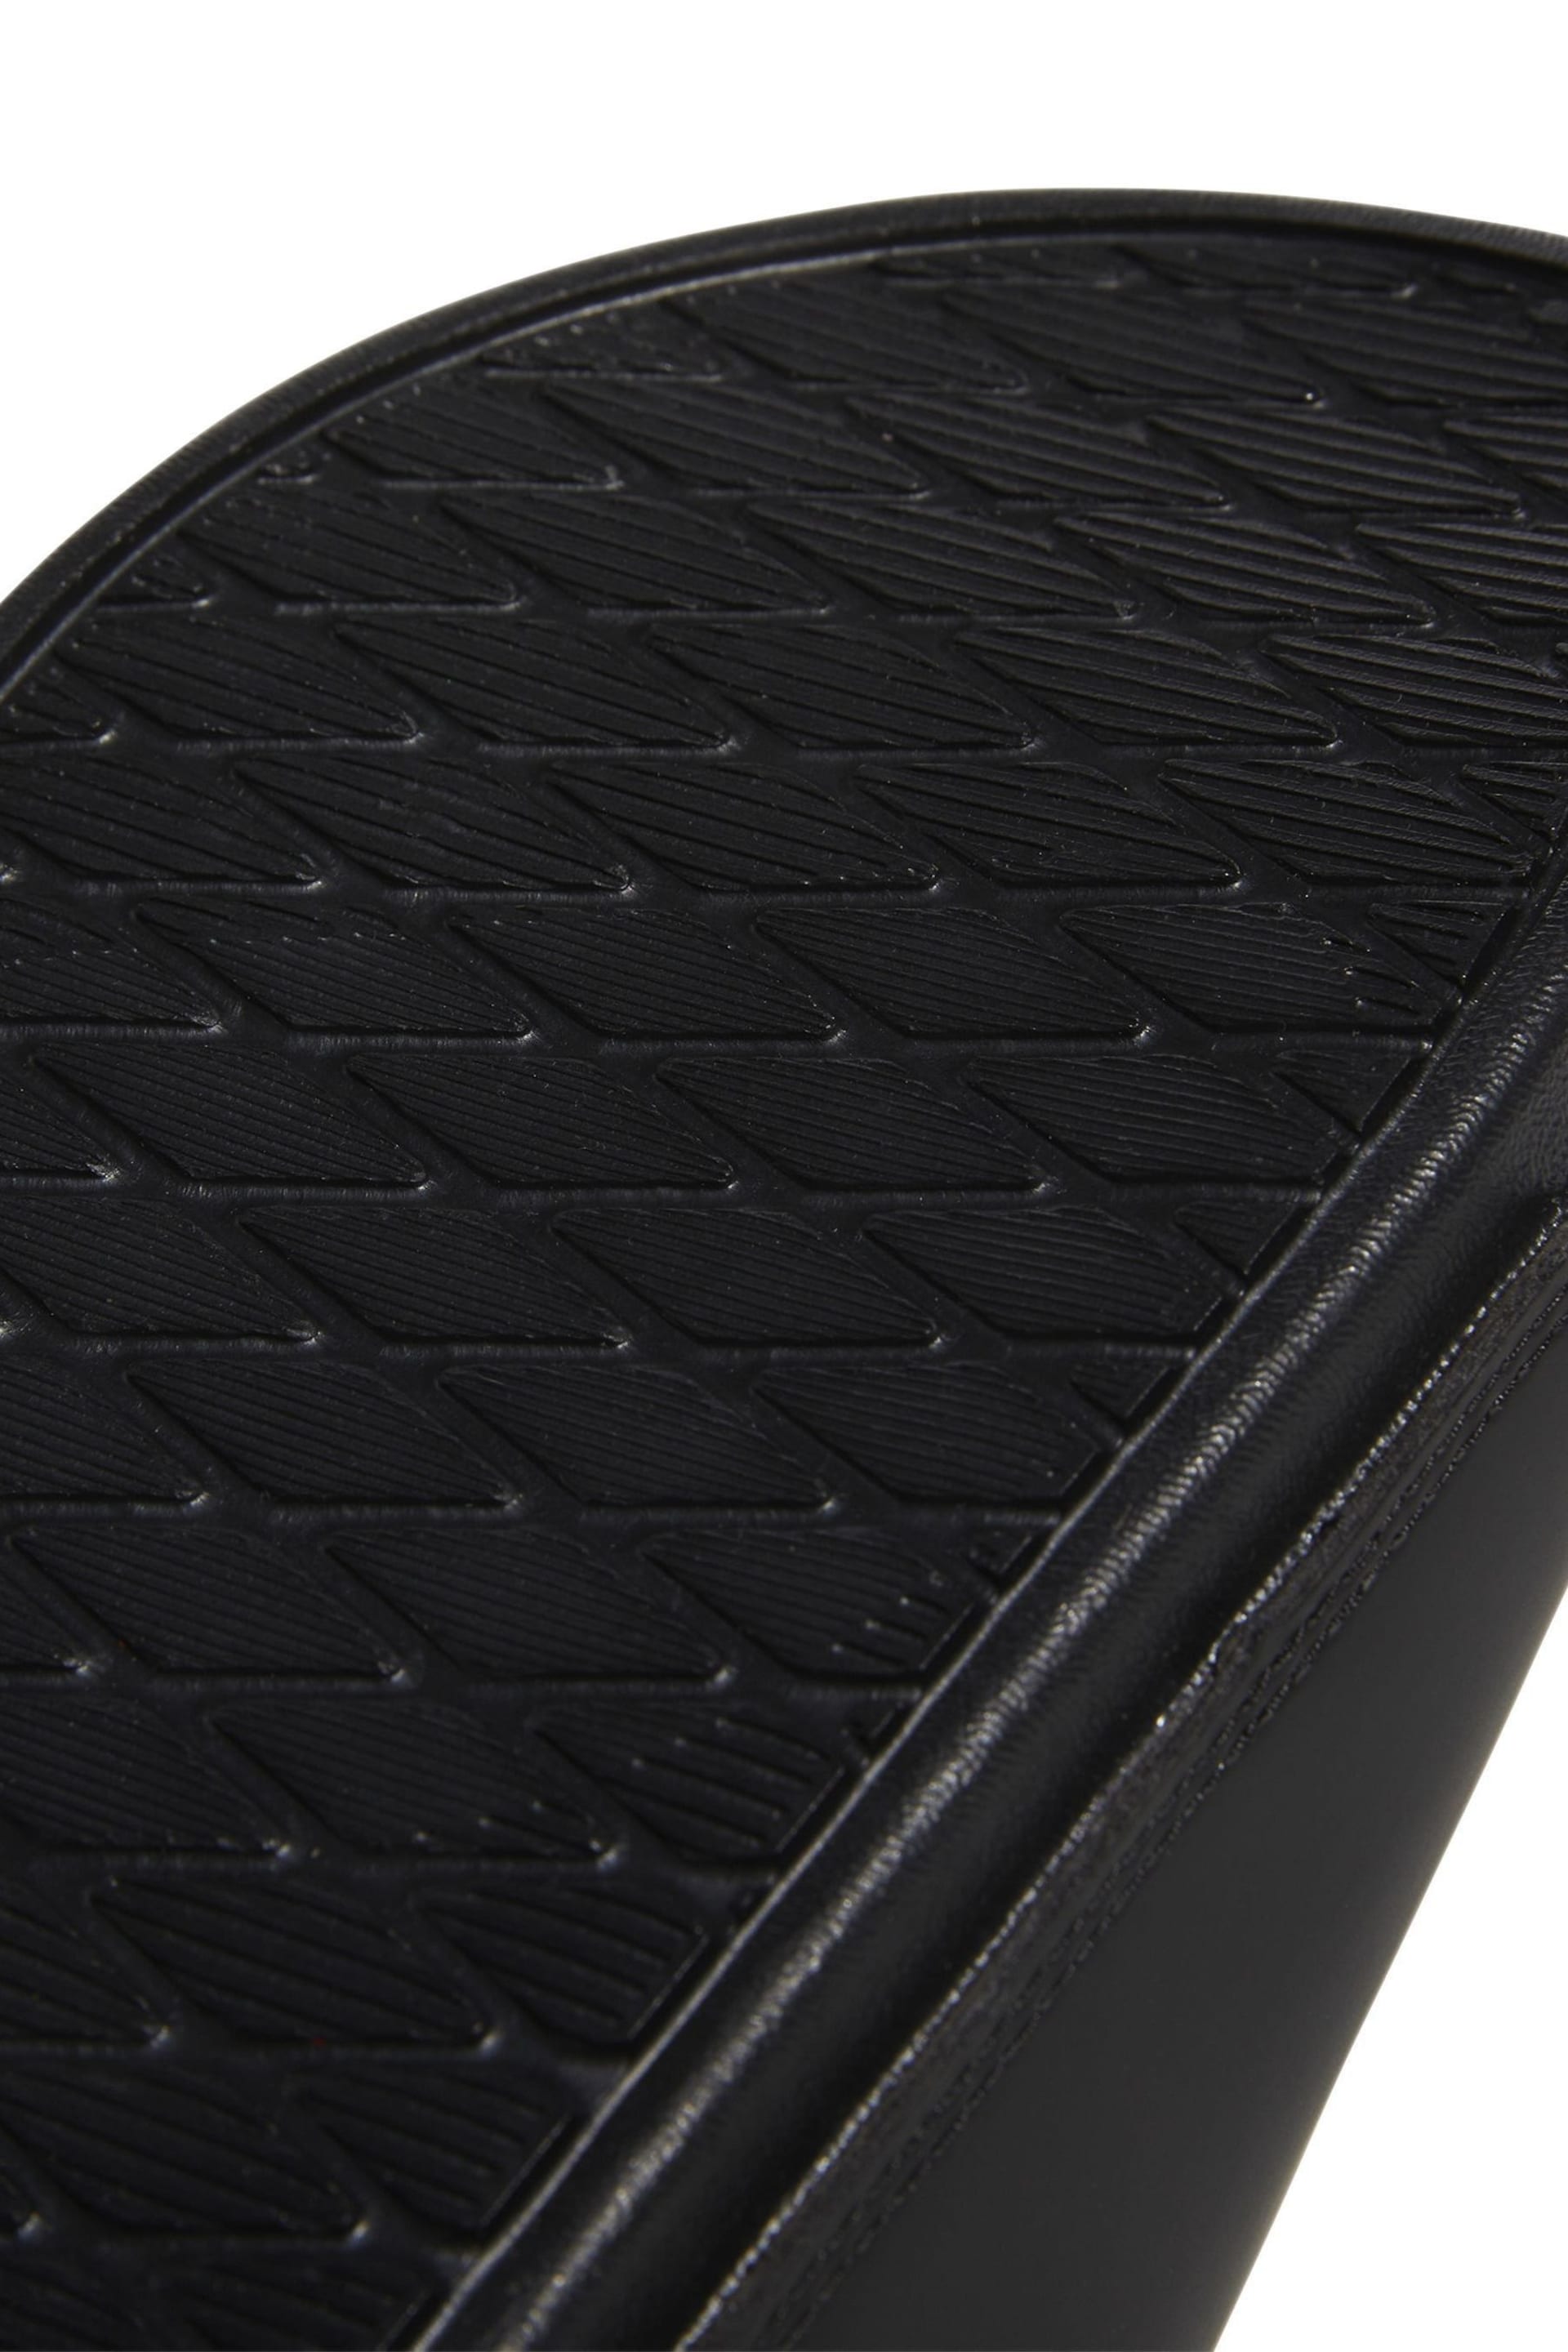 adidas Dark Black Sportswear Adilette Comfort Slides - Image 9 of 9